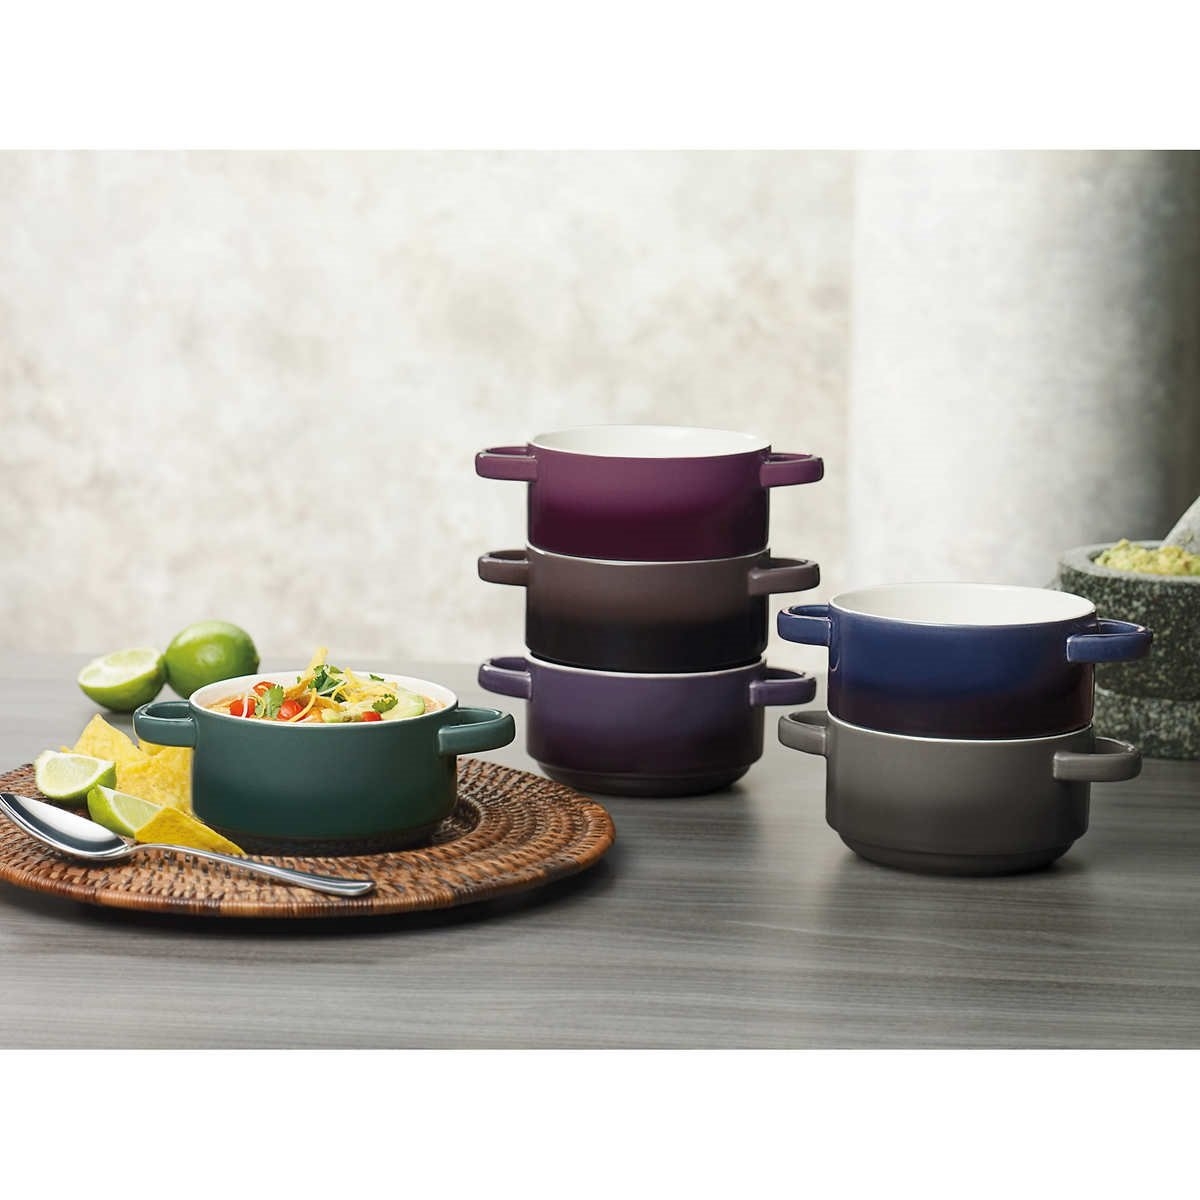 Details about   Bruntmor Ceramic Soup Bowls Set of 2 Serving Bowls With Handle & Lid 20 OZ Black